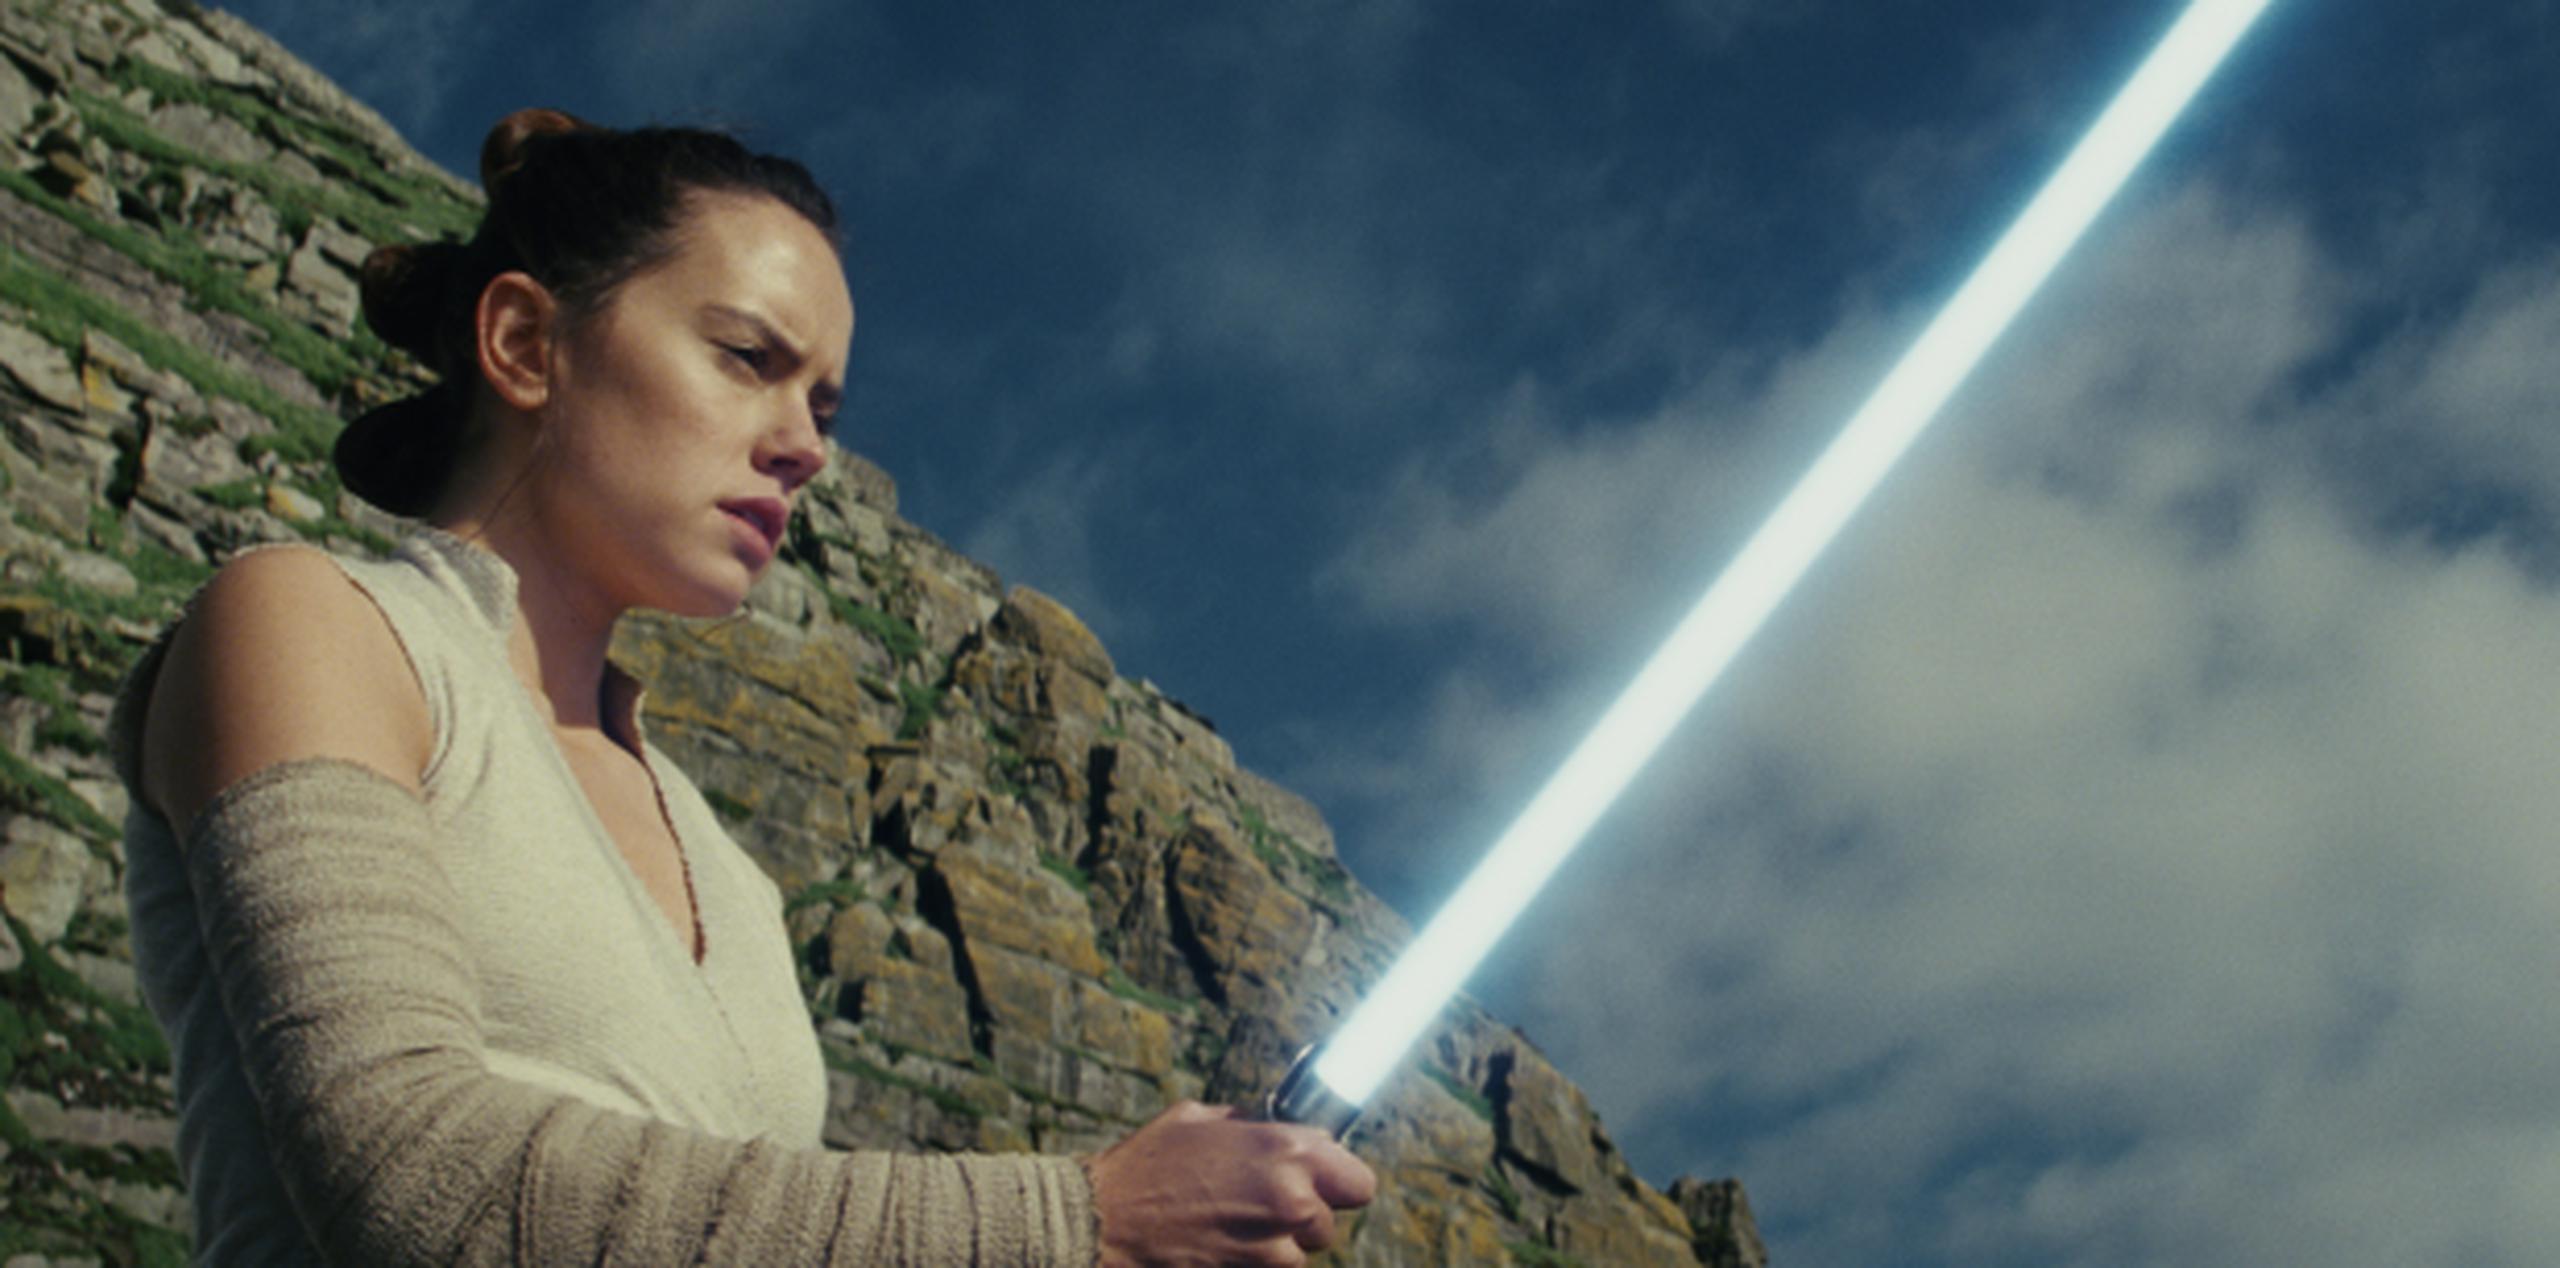 La actriz inglesa Daisy Ridley interpreta a Rey en “Star Wars: The Last Jedi”. (Lucasfilm Ltd. vía AP)